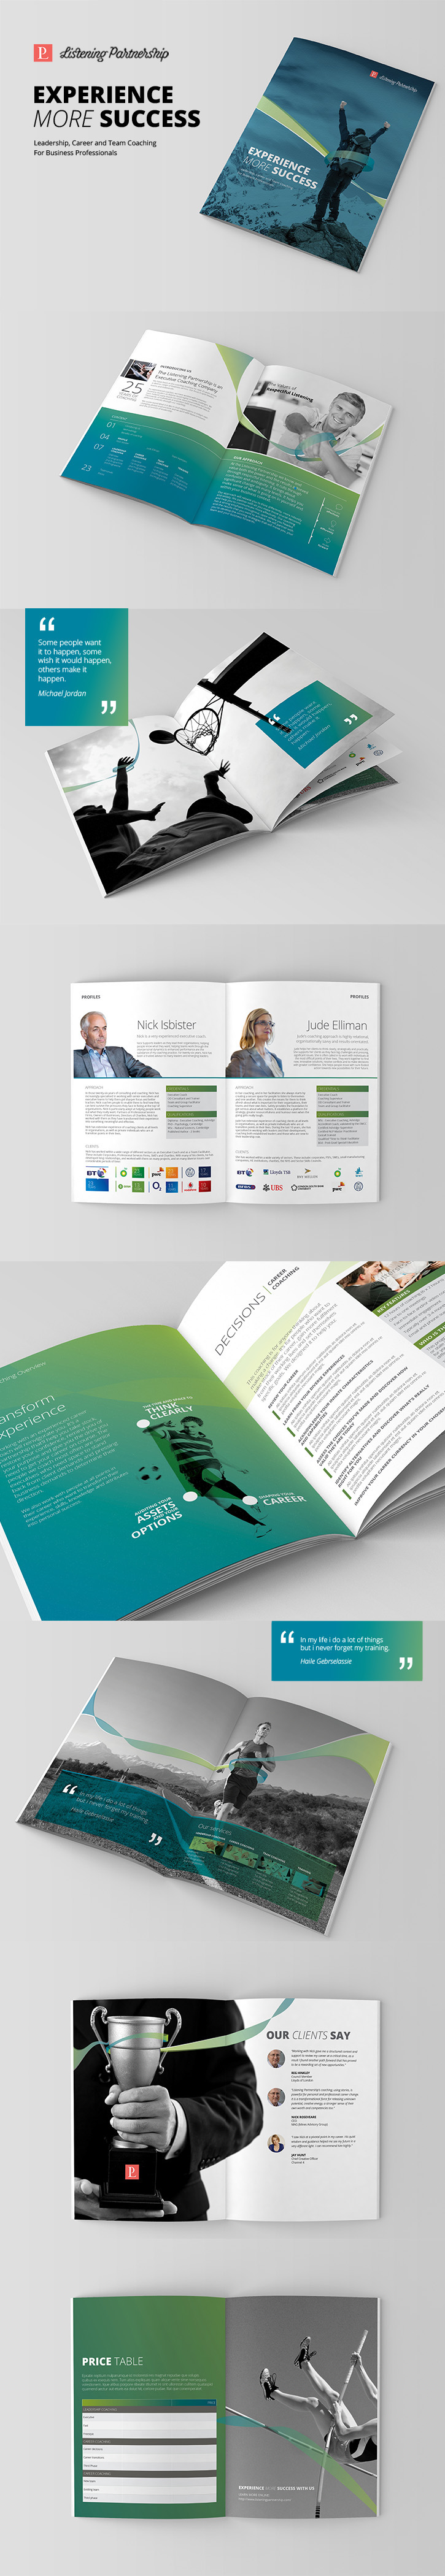 Coach executive business leader team sport concept corporate brochure profile